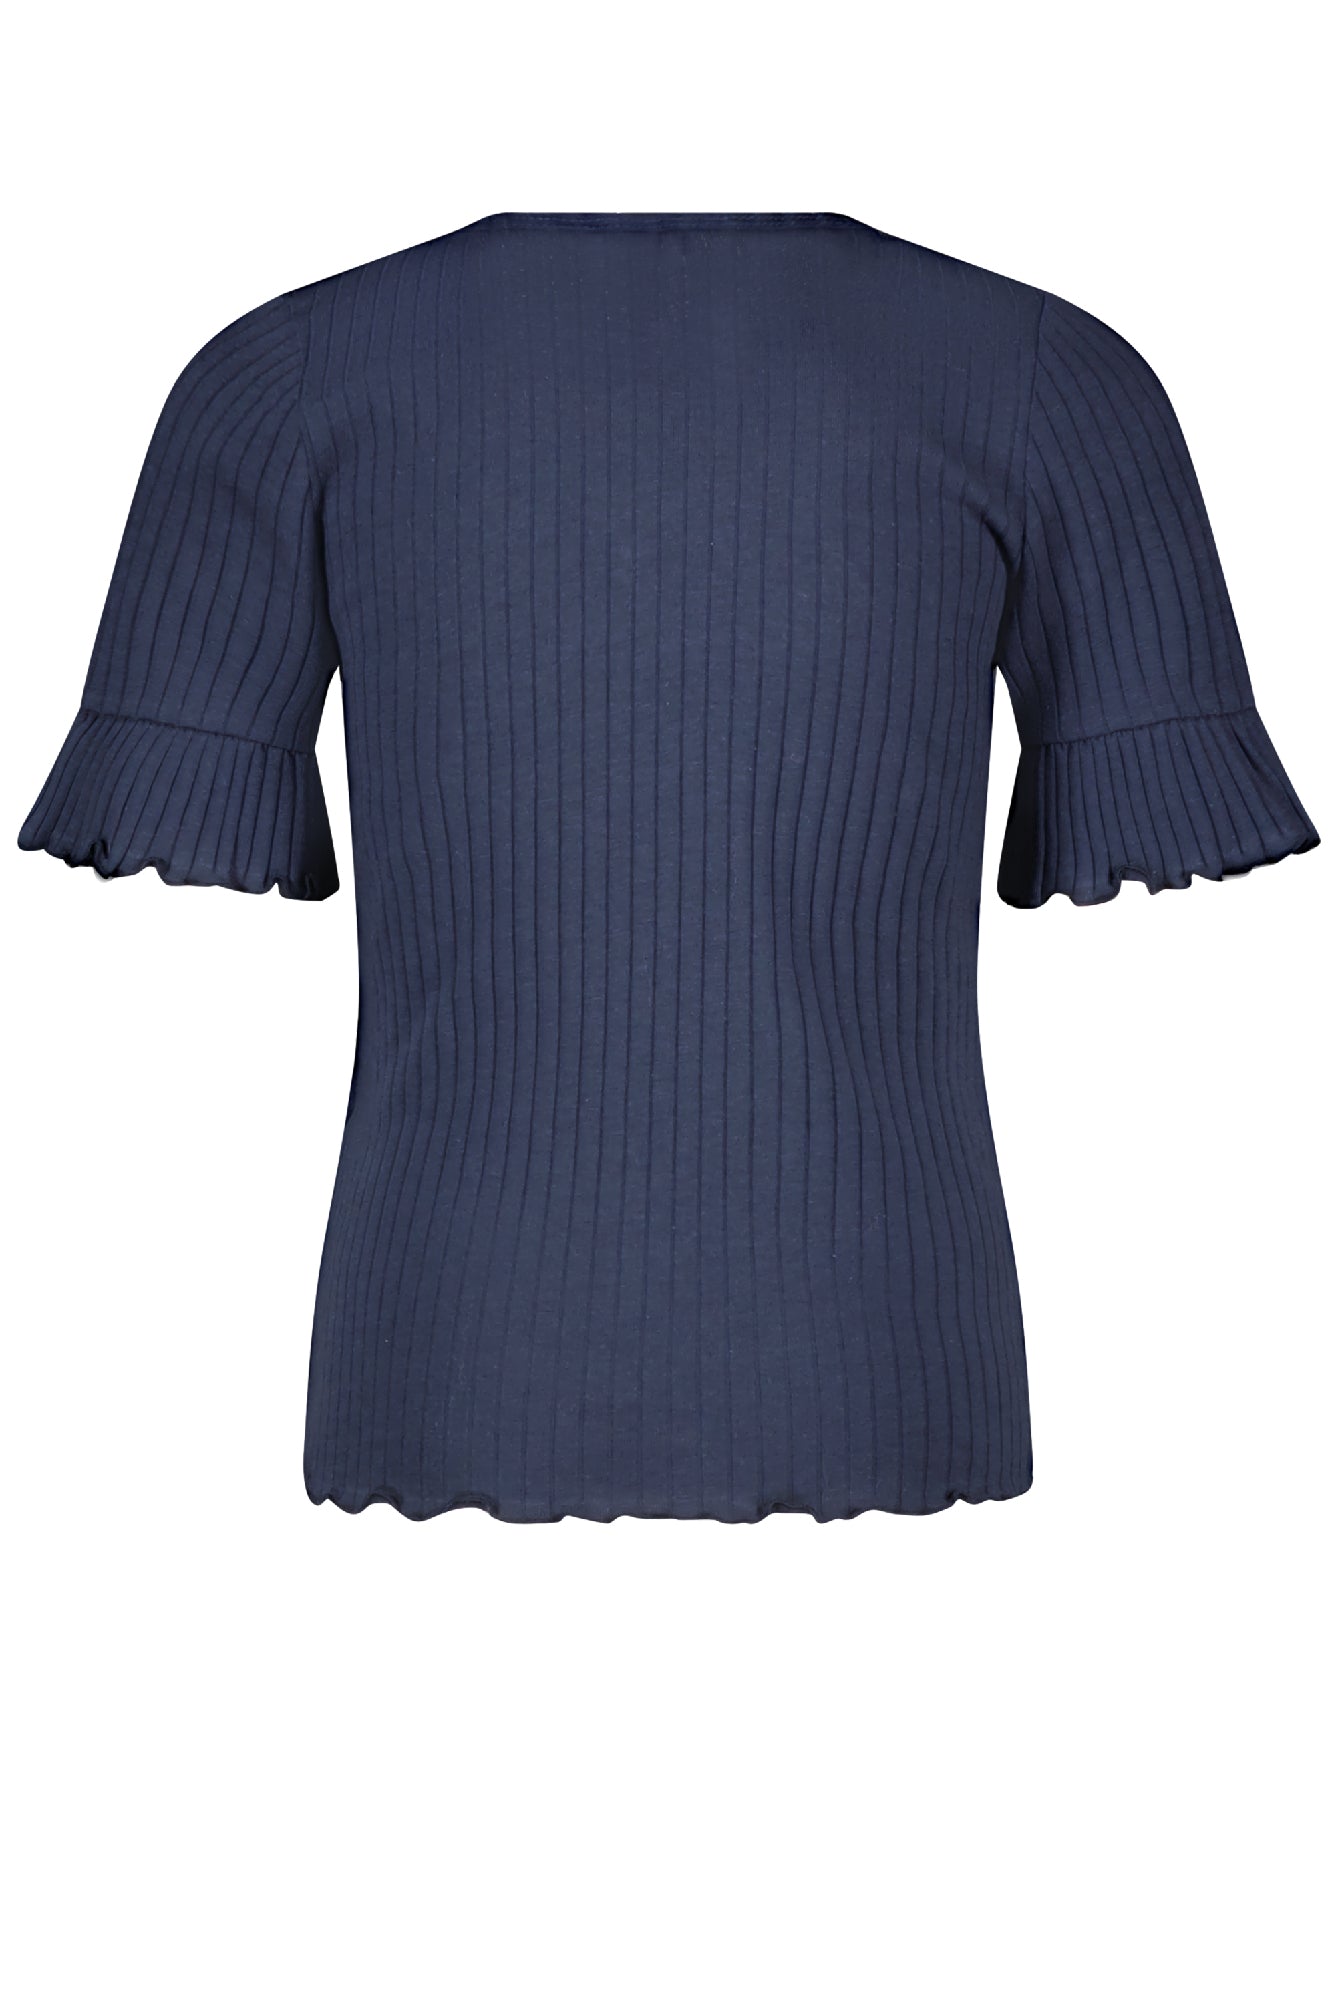 Meisjes Kapi rib jersey tshirt half sleeve with smock at shoulder van NoNo in de kleur Navy Blazer in maat 134-140.